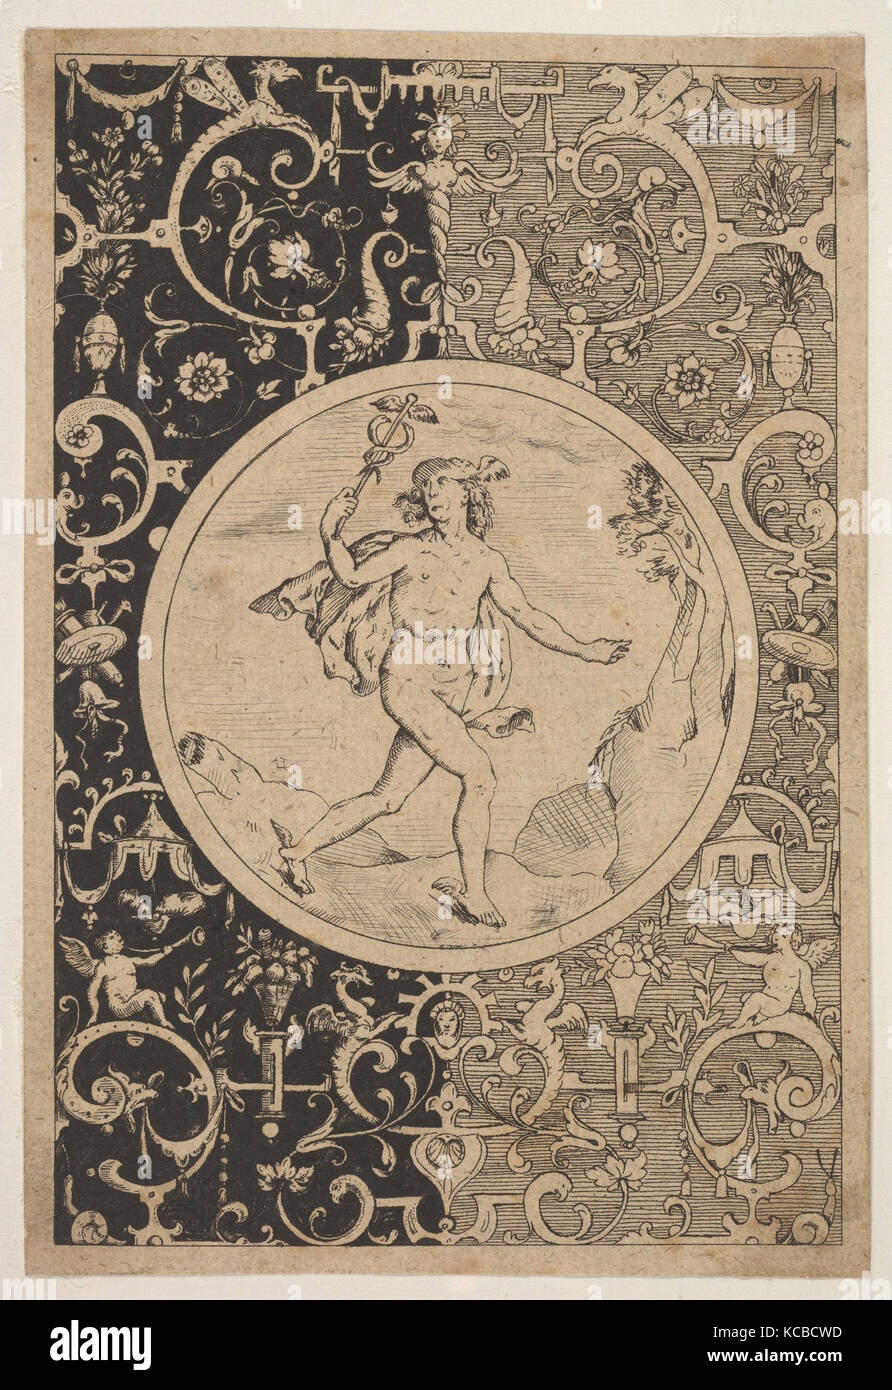 Le mercure dans un cadre décoratif avec grotesques, après Adriaen Collaert, ca. 1600-1630 Banque D'Images